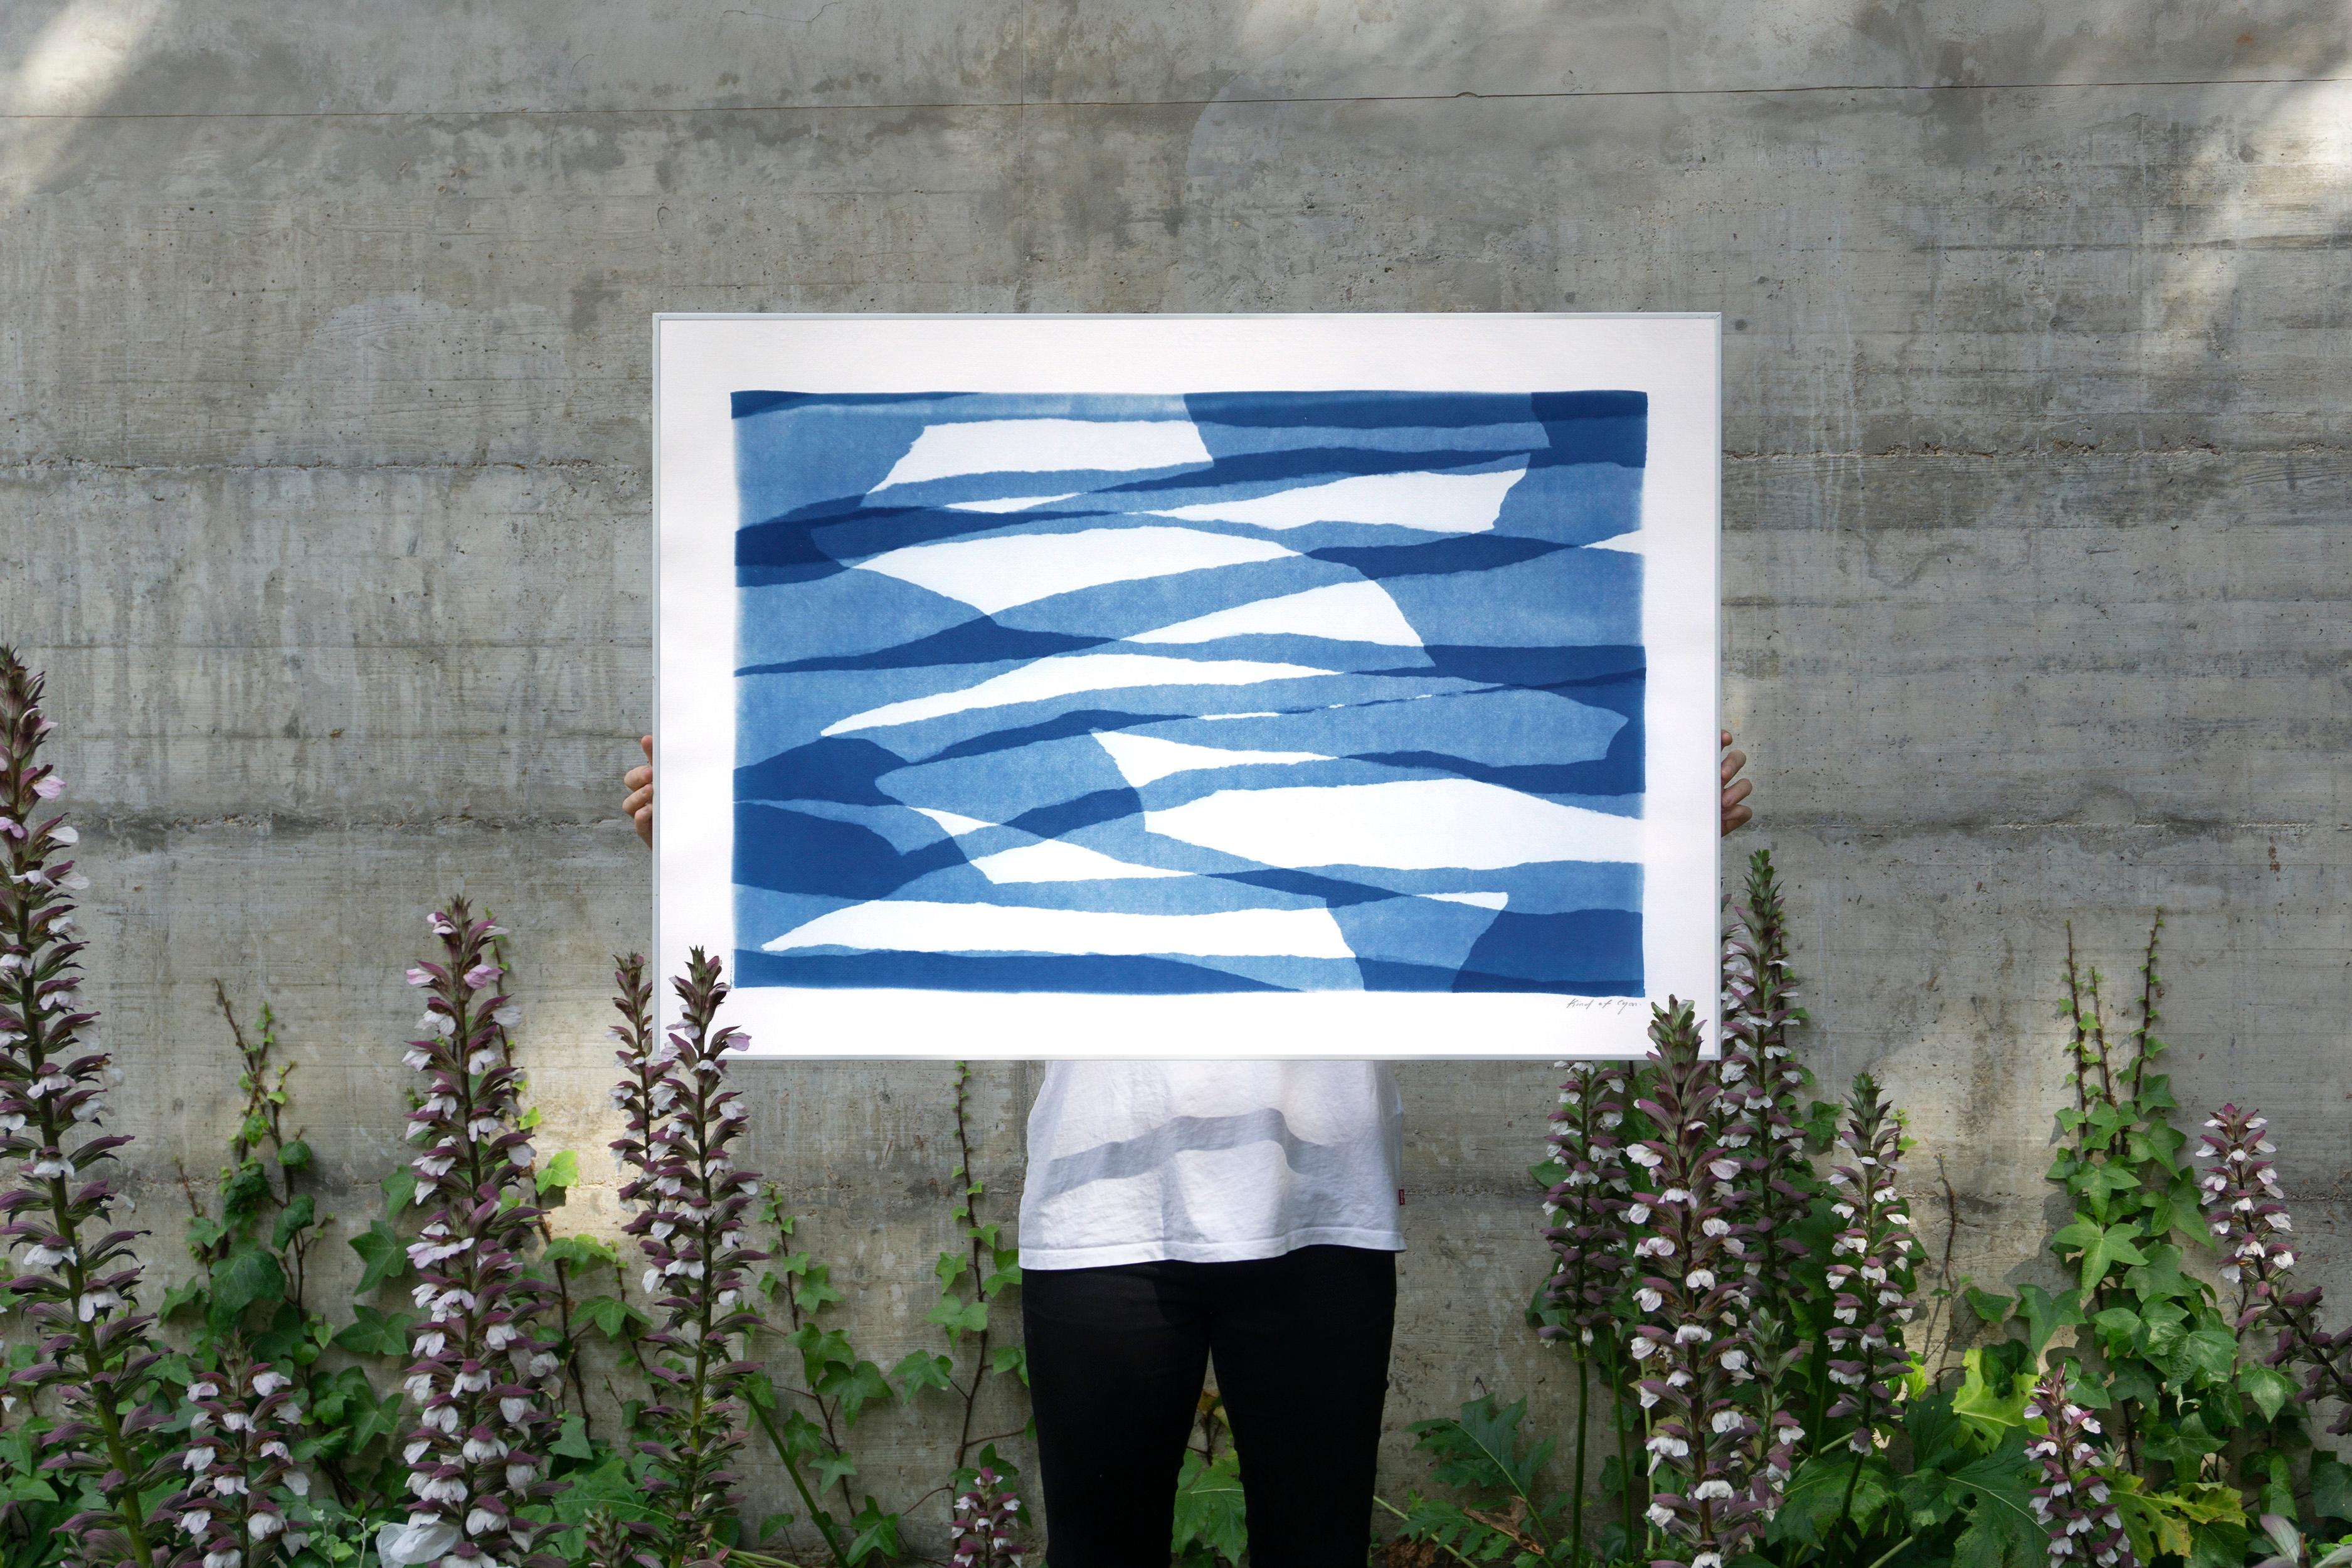 Monotype unique dans des tons bleus, couches de papier torsadé, formes abstraites horizontales - Print de Kind of Cyan